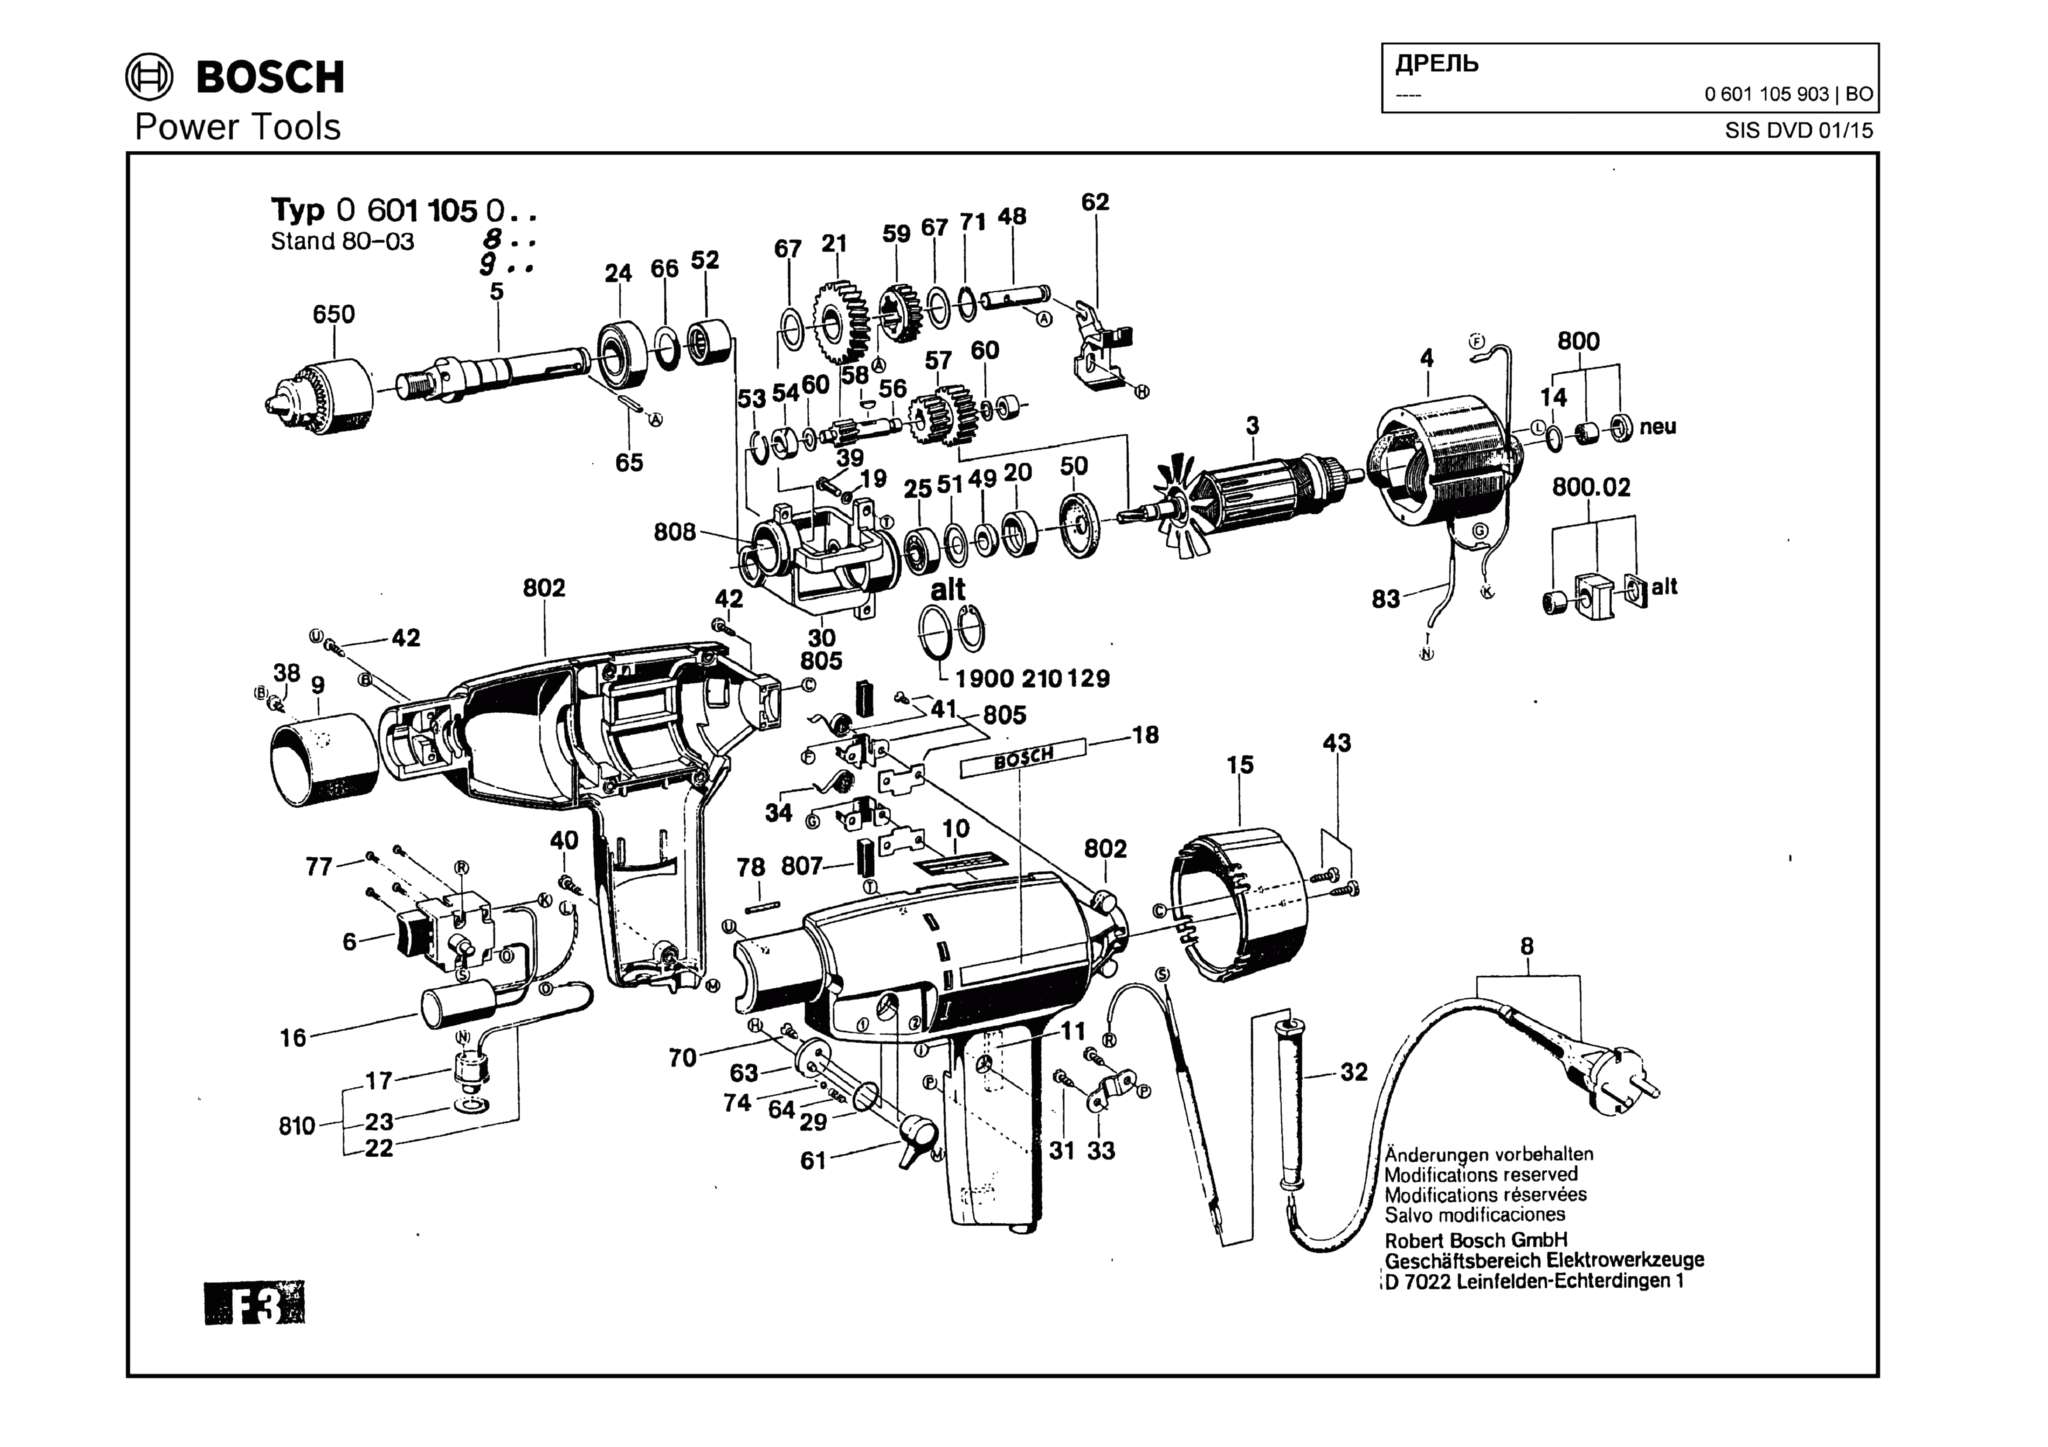 Запчасти, схема и деталировка Bosch (ТИП 0601105903)